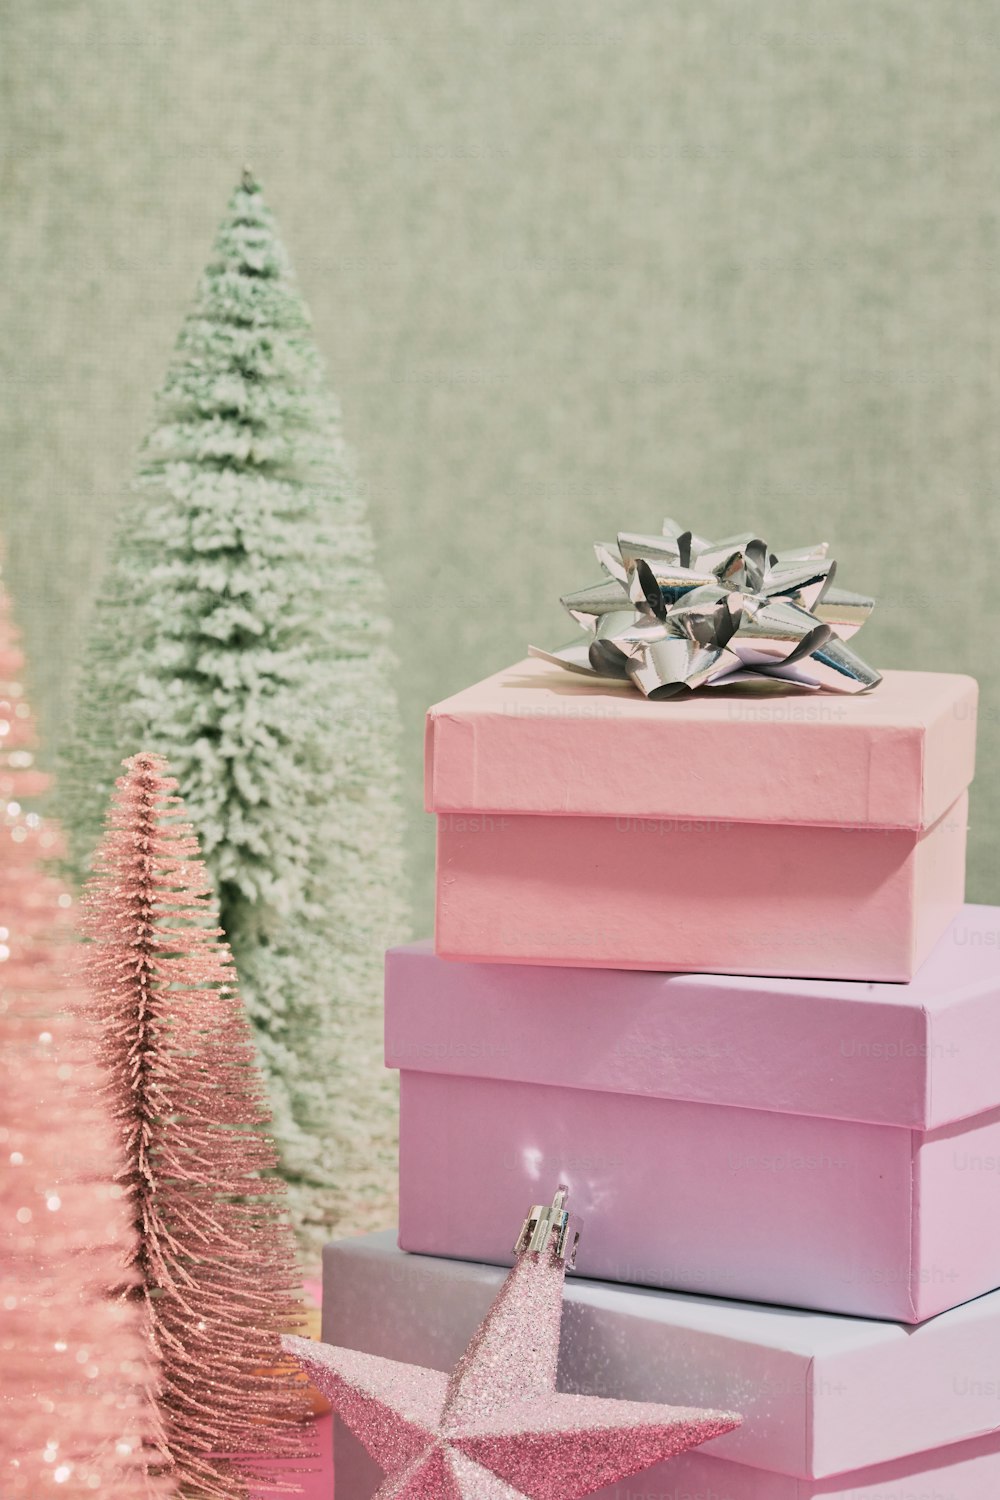 クリスマスツリーの隣に座っているピンクの箱の山